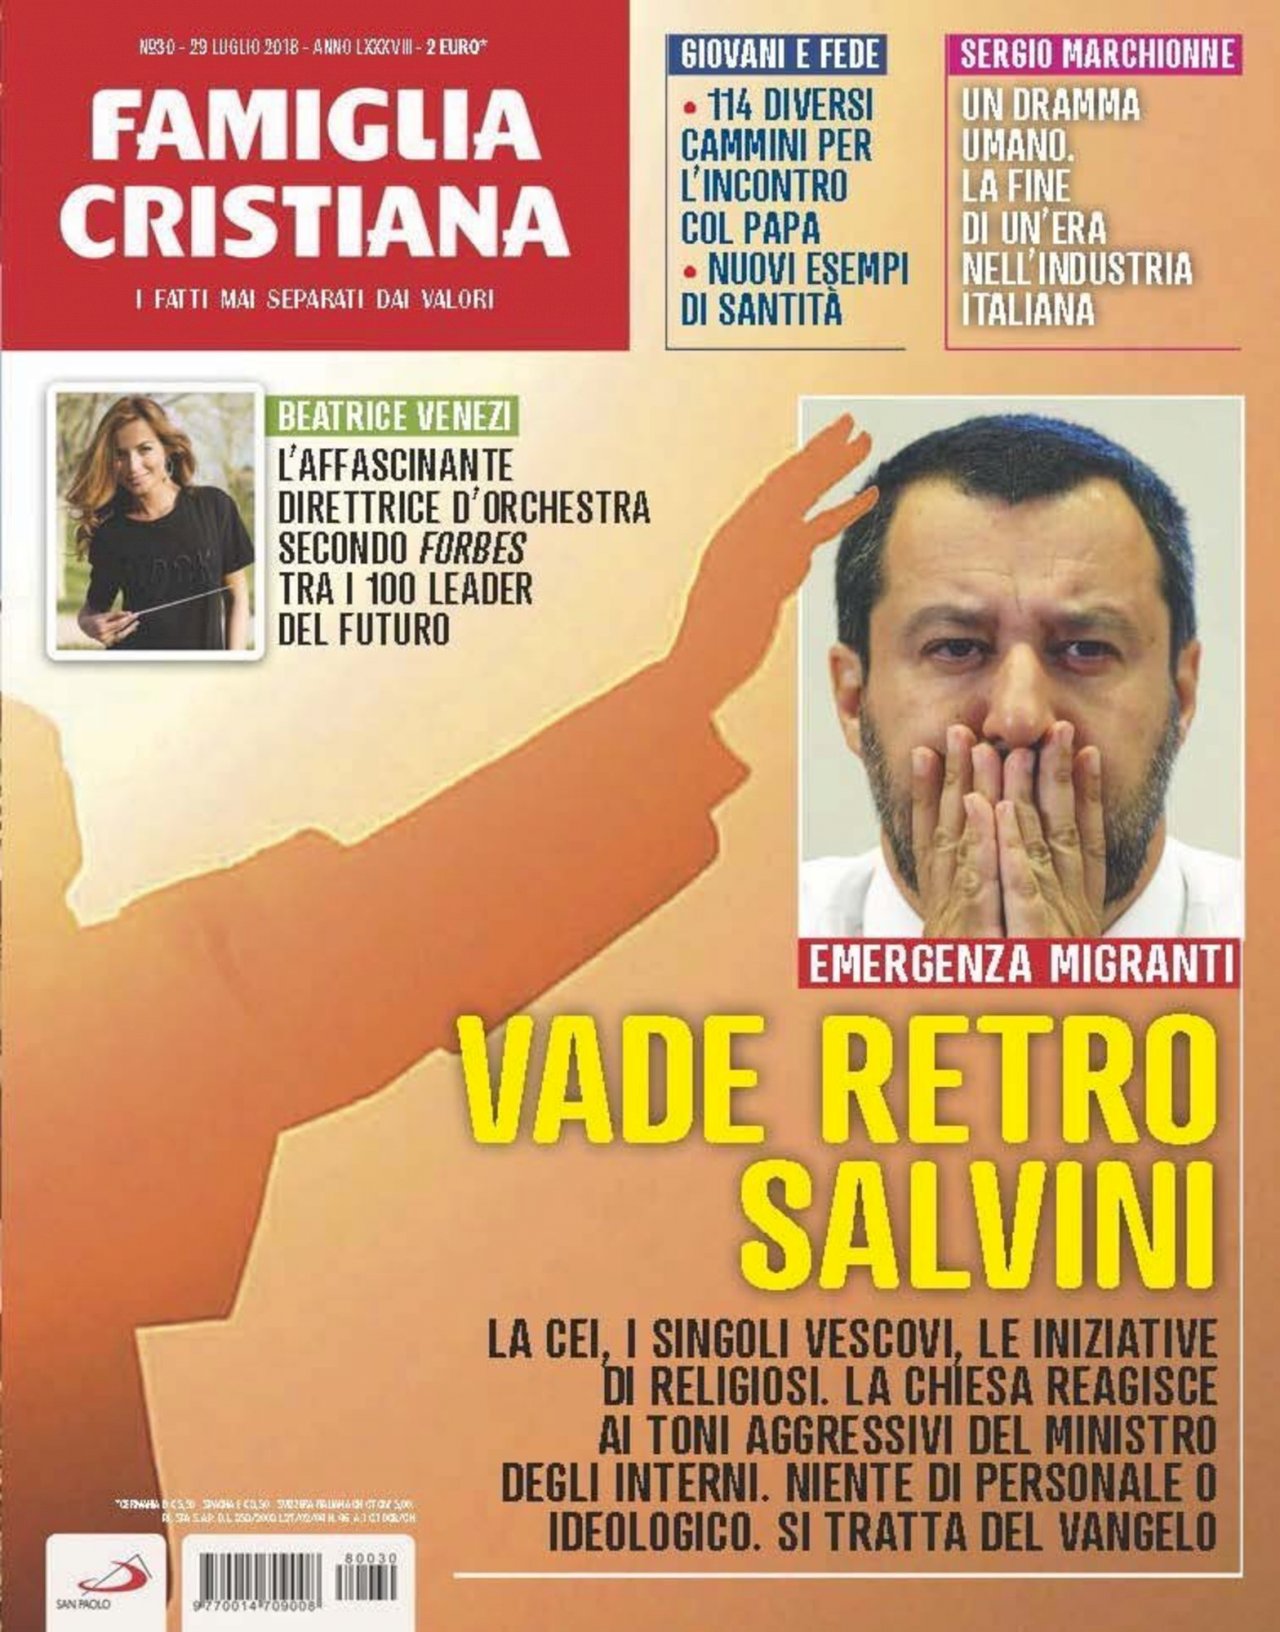 義內政部長反移民 天主教雜誌將之比作撒旦